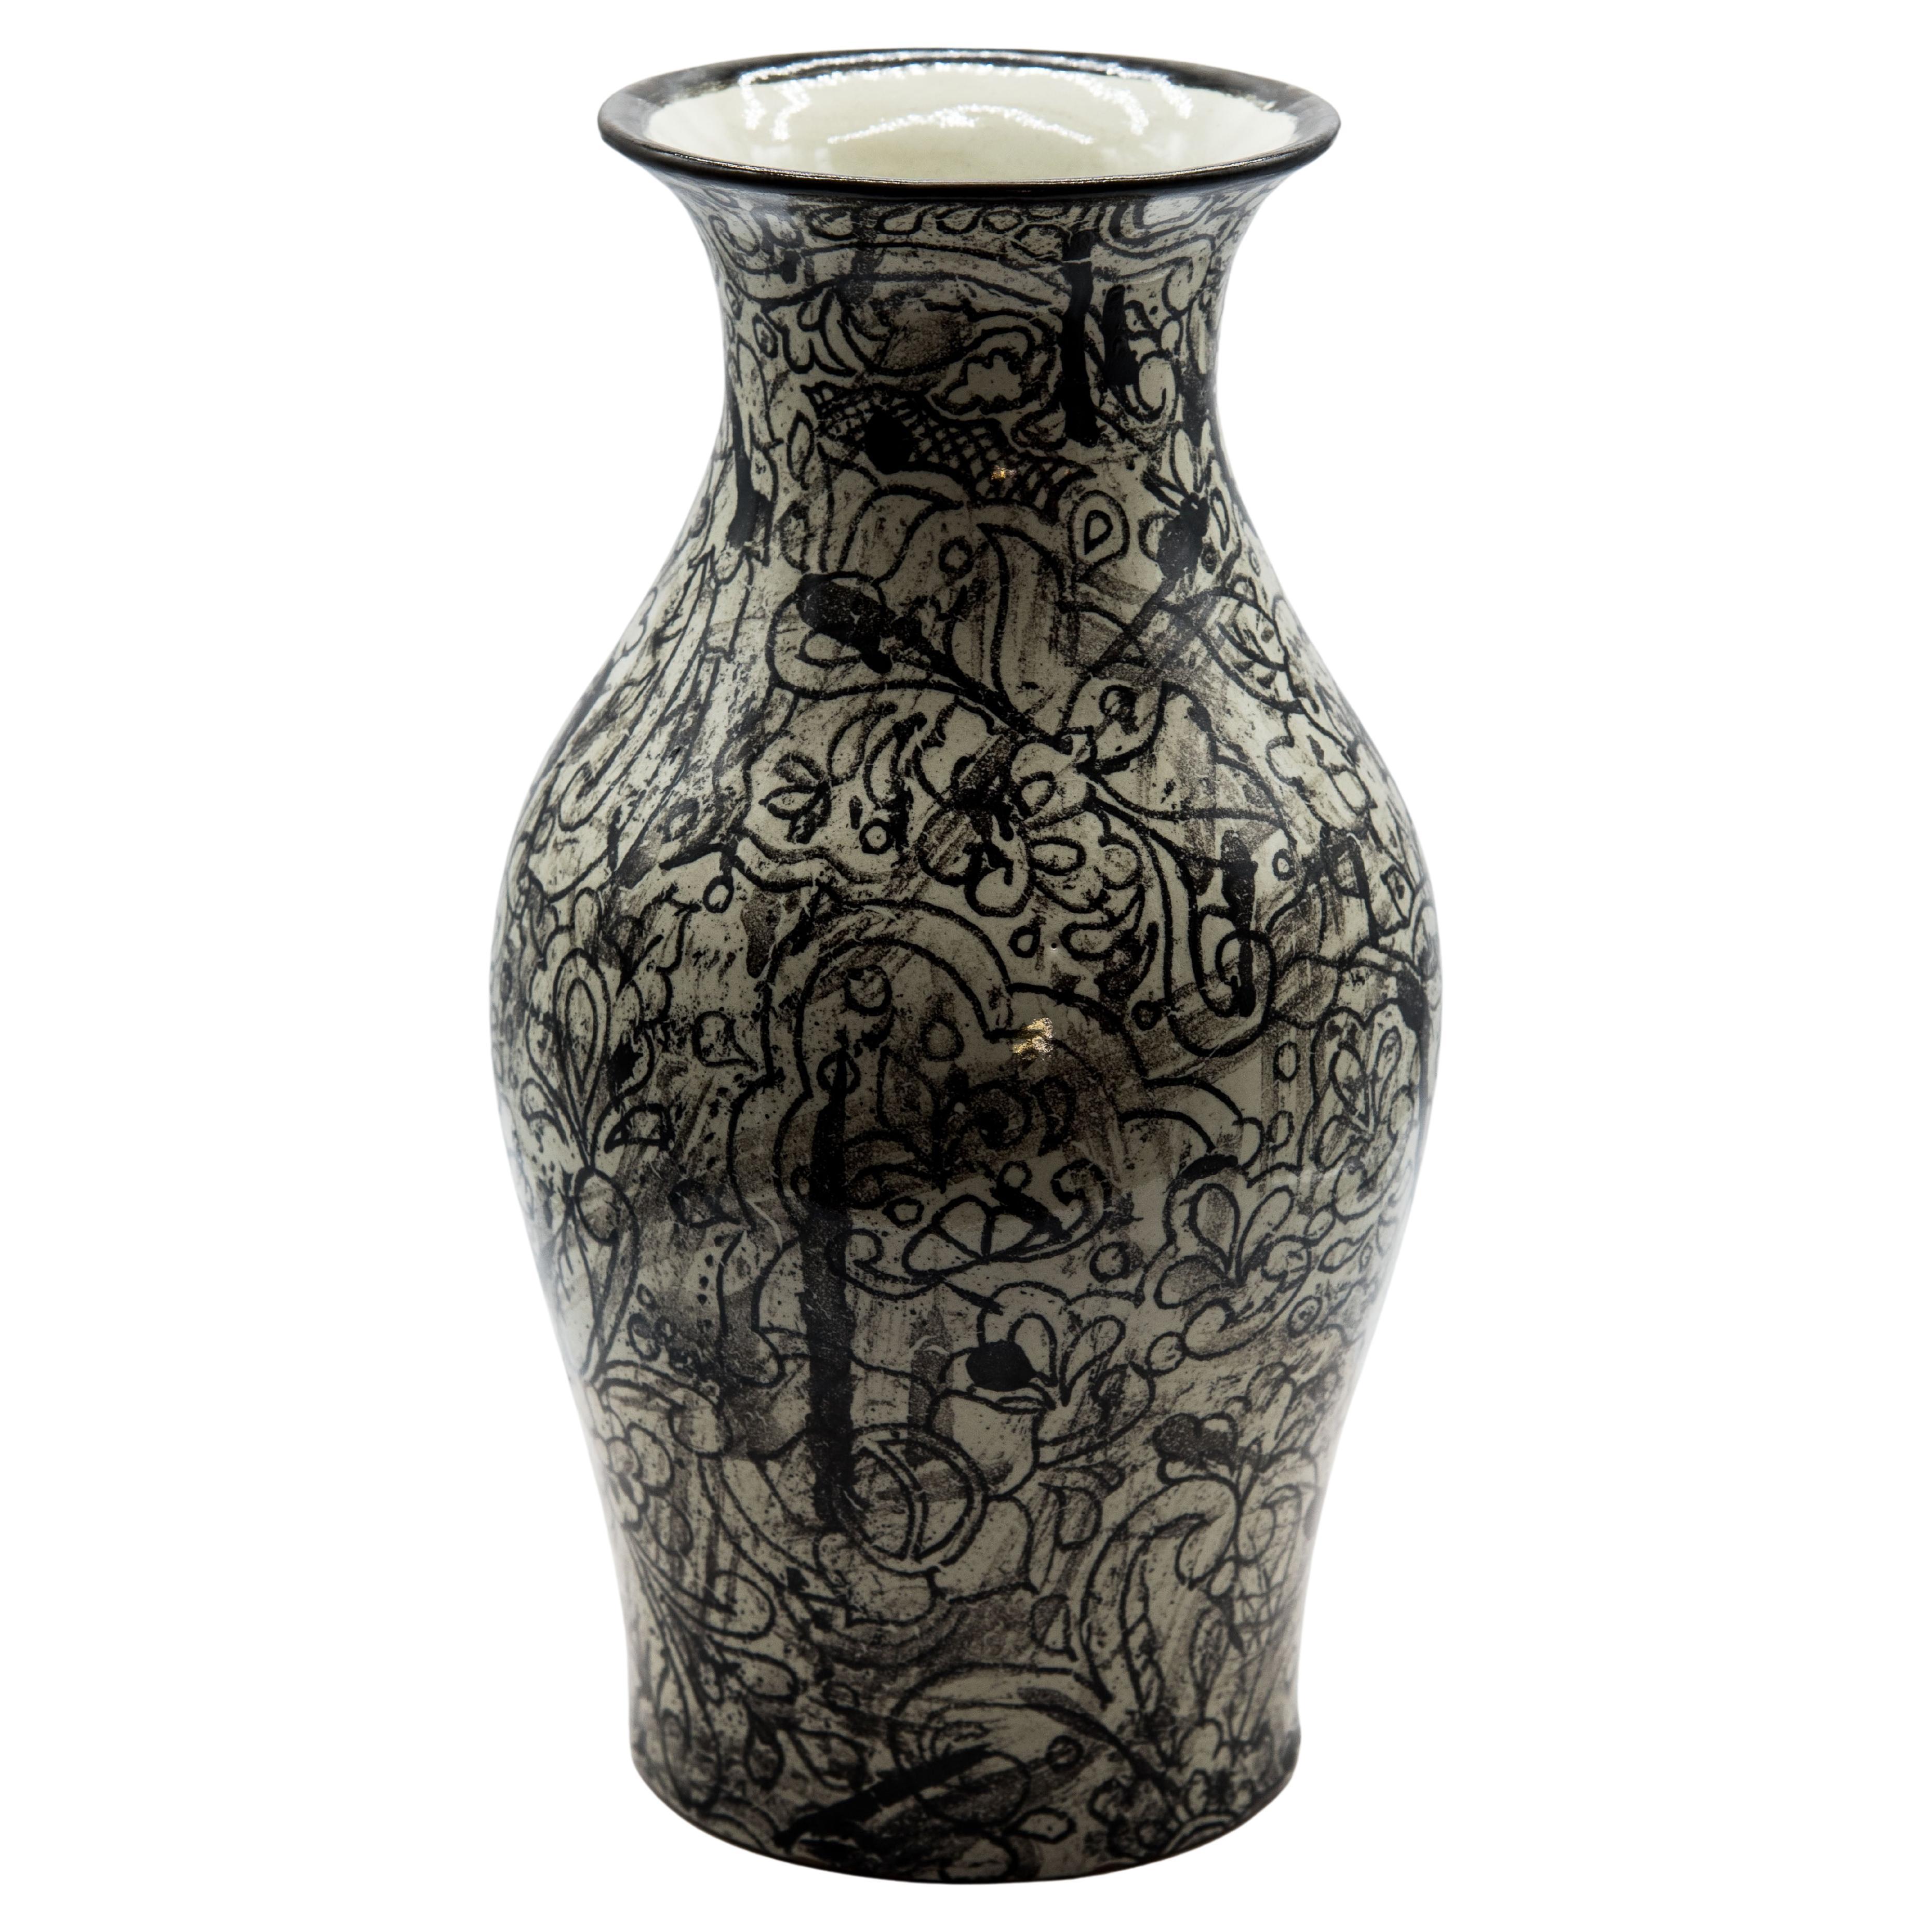 Elegantes schwarz-weißes Gefäß, hergestellt in der authentischen Talavera-Technik. Der Meisterhandwerker Cesar Torres porträtiert die koloniale Kunst Mexikos und entwirft gleichzeitig ein zeitgenössisches abstraktes Design für das Gefäß. 

Die